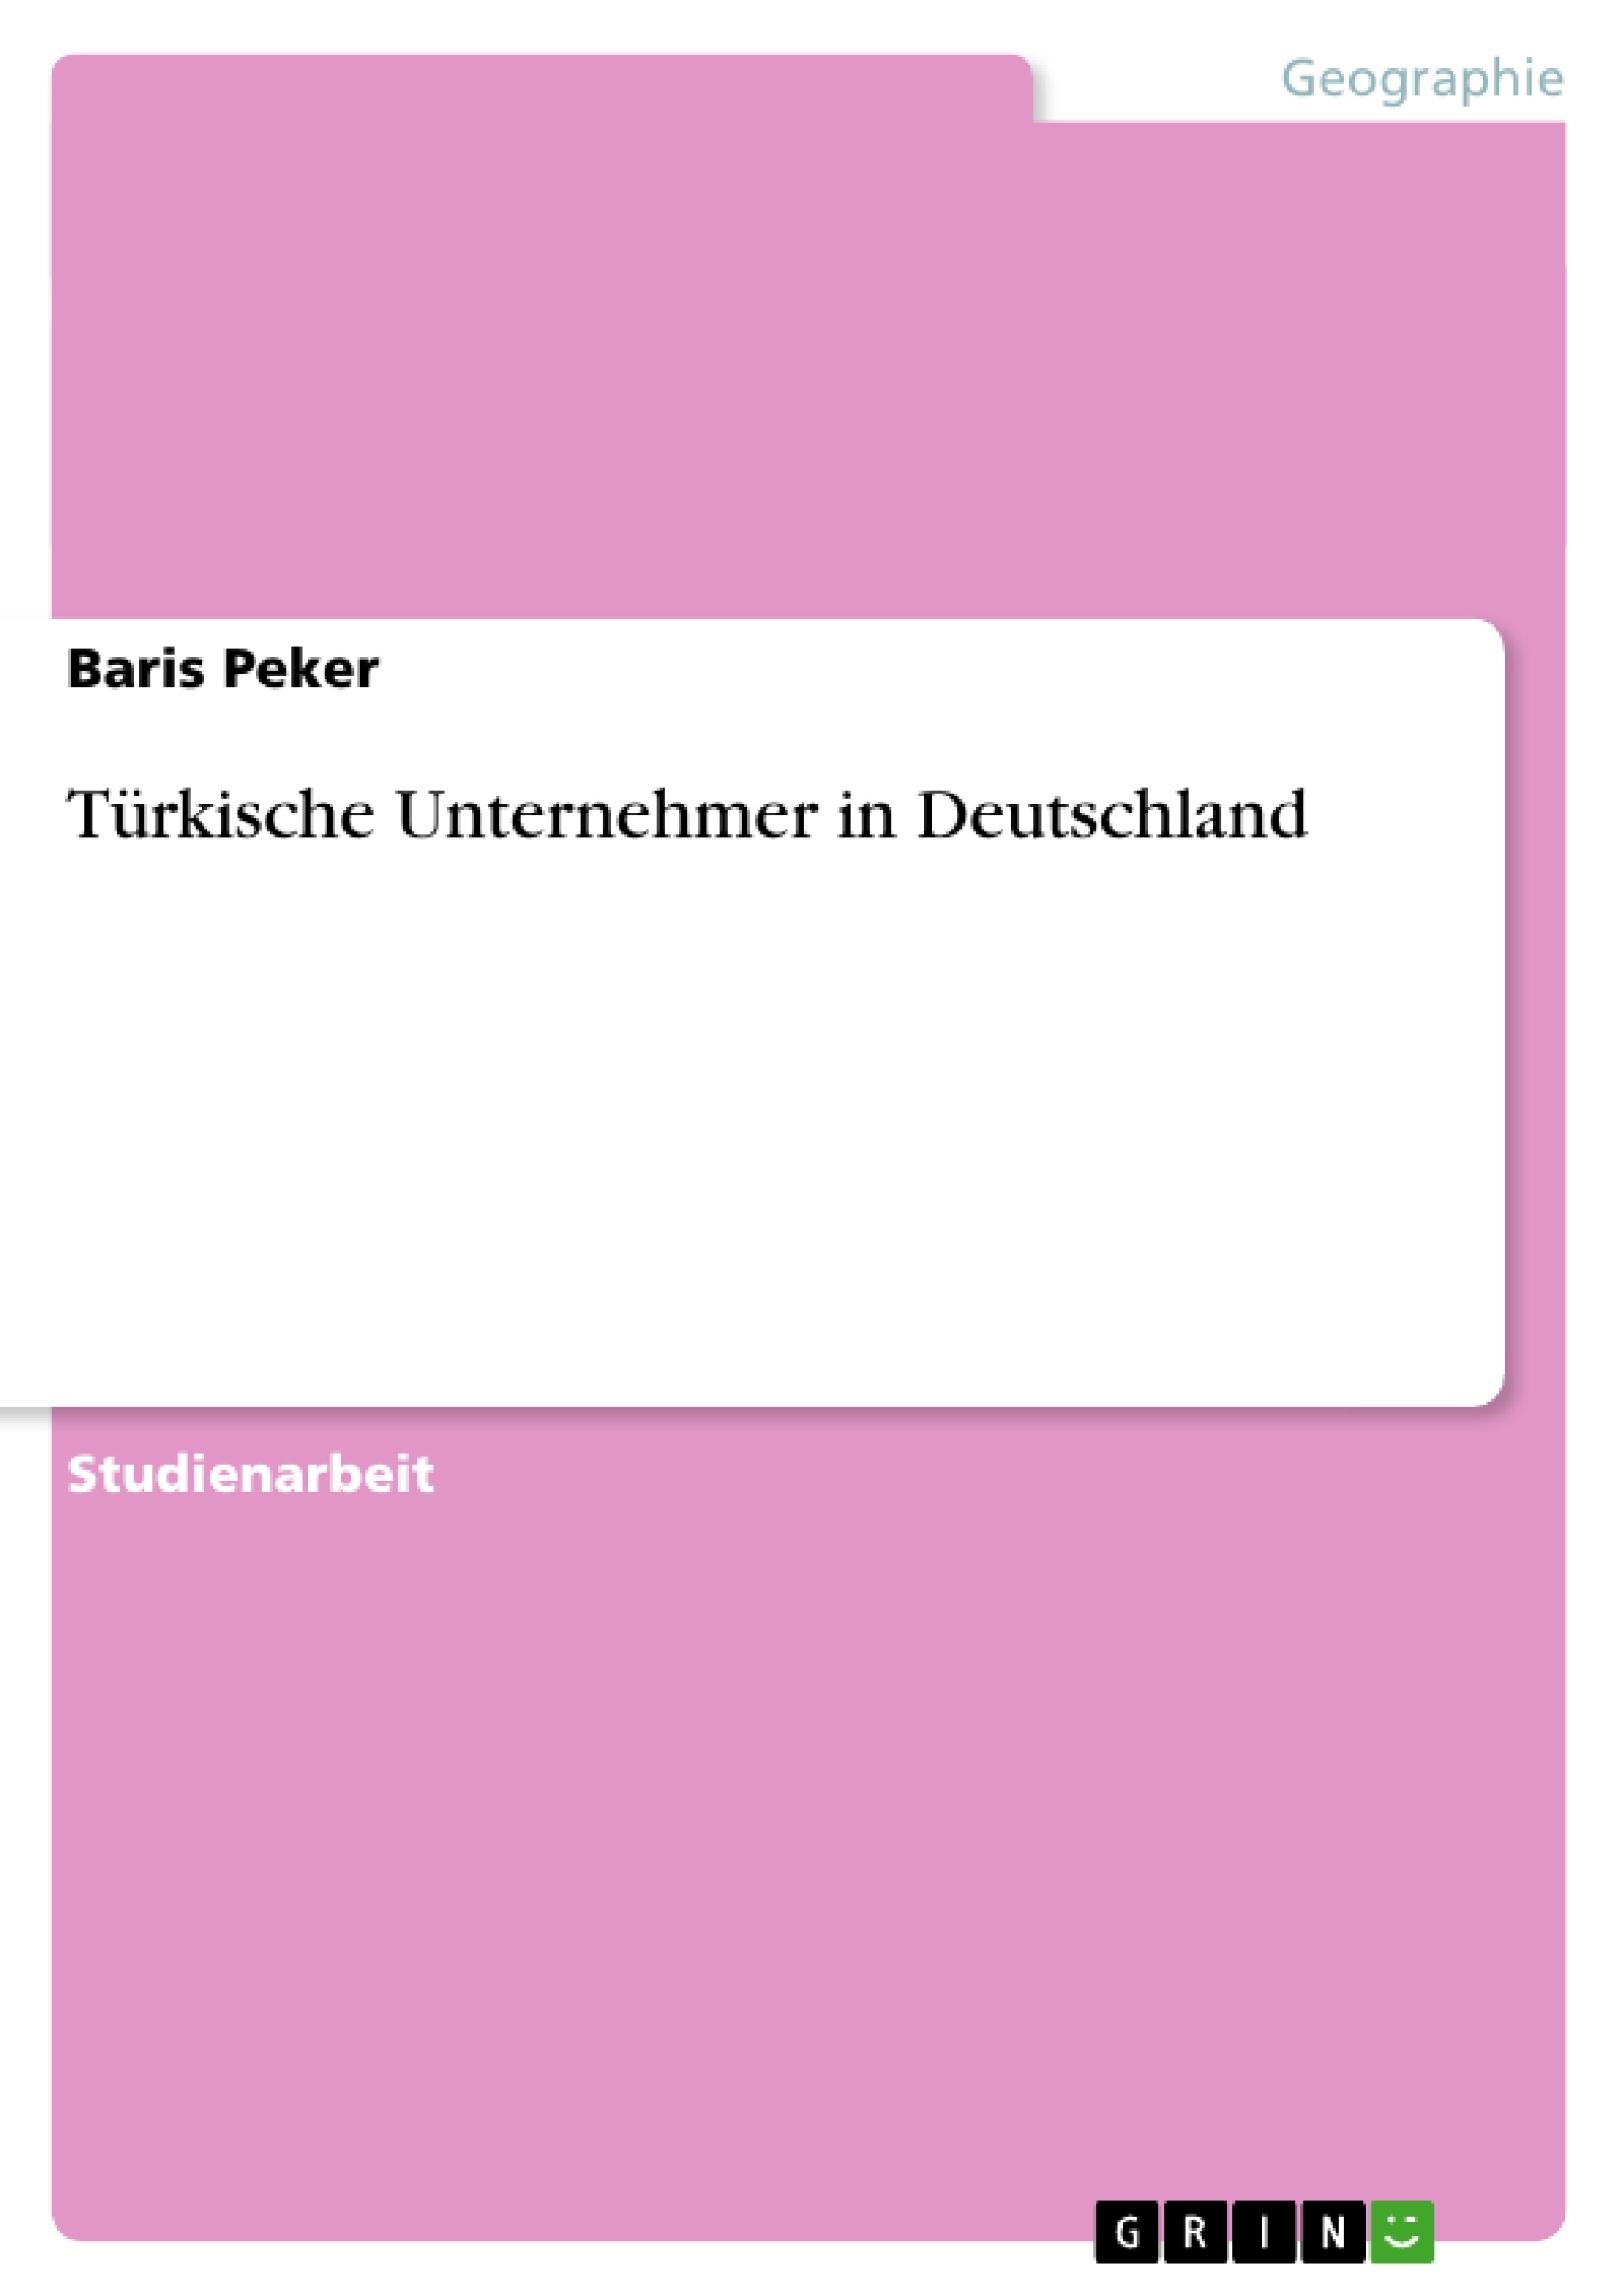 Titel: Türkische Unternehmer in Deutschland